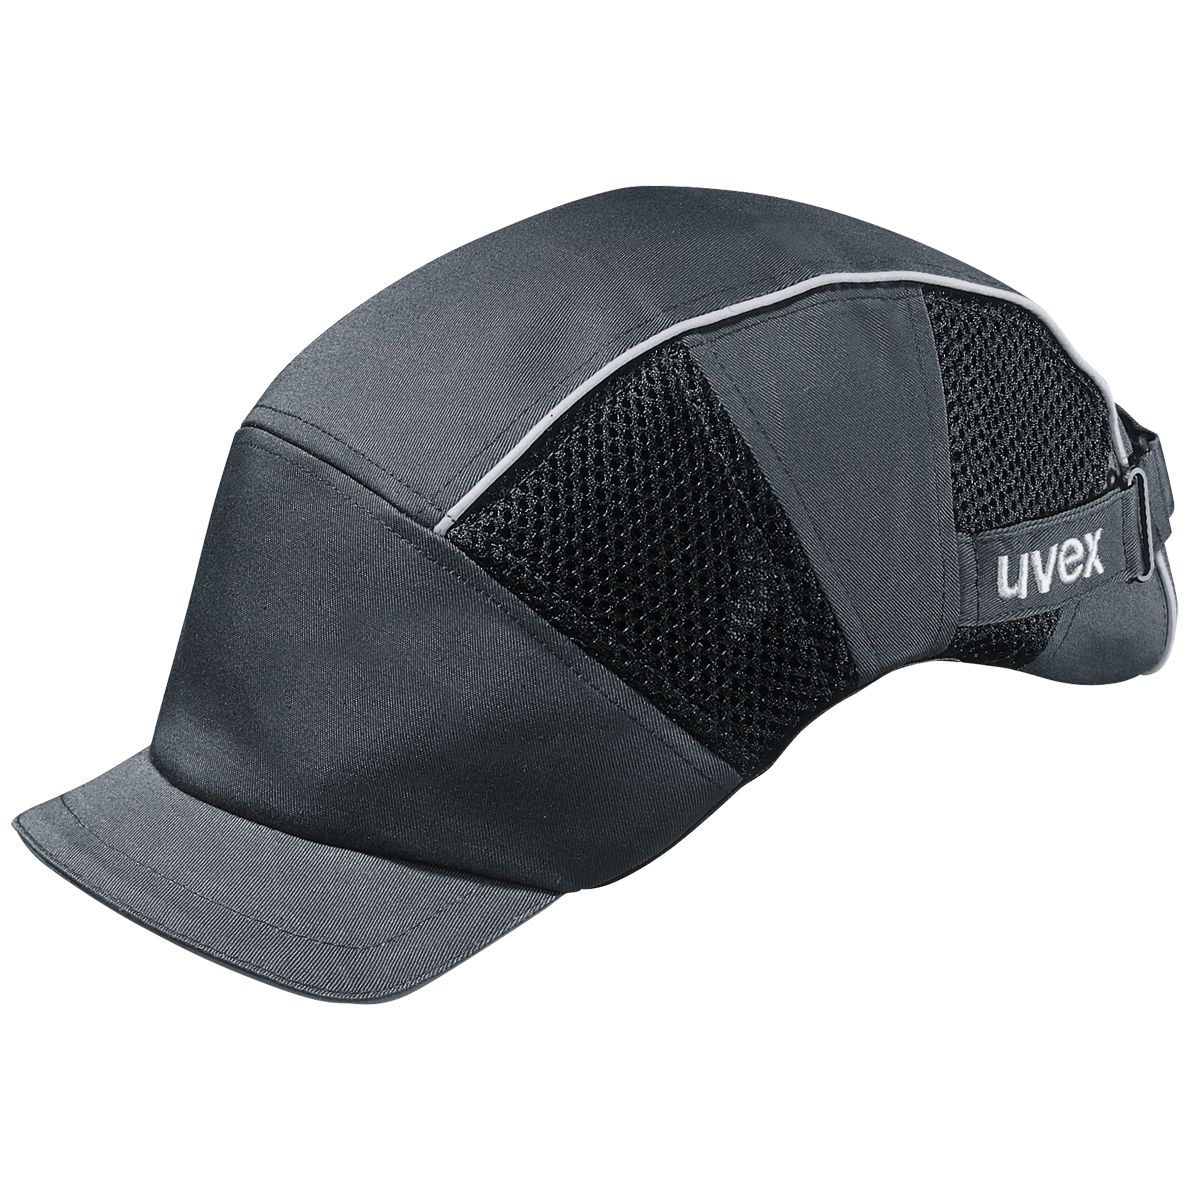 uvex u-cap premium armadillo Anstoßkappe - Komfortable Schutzkappe mit kurzem Schirm - für Bau & Industrie - EN 812